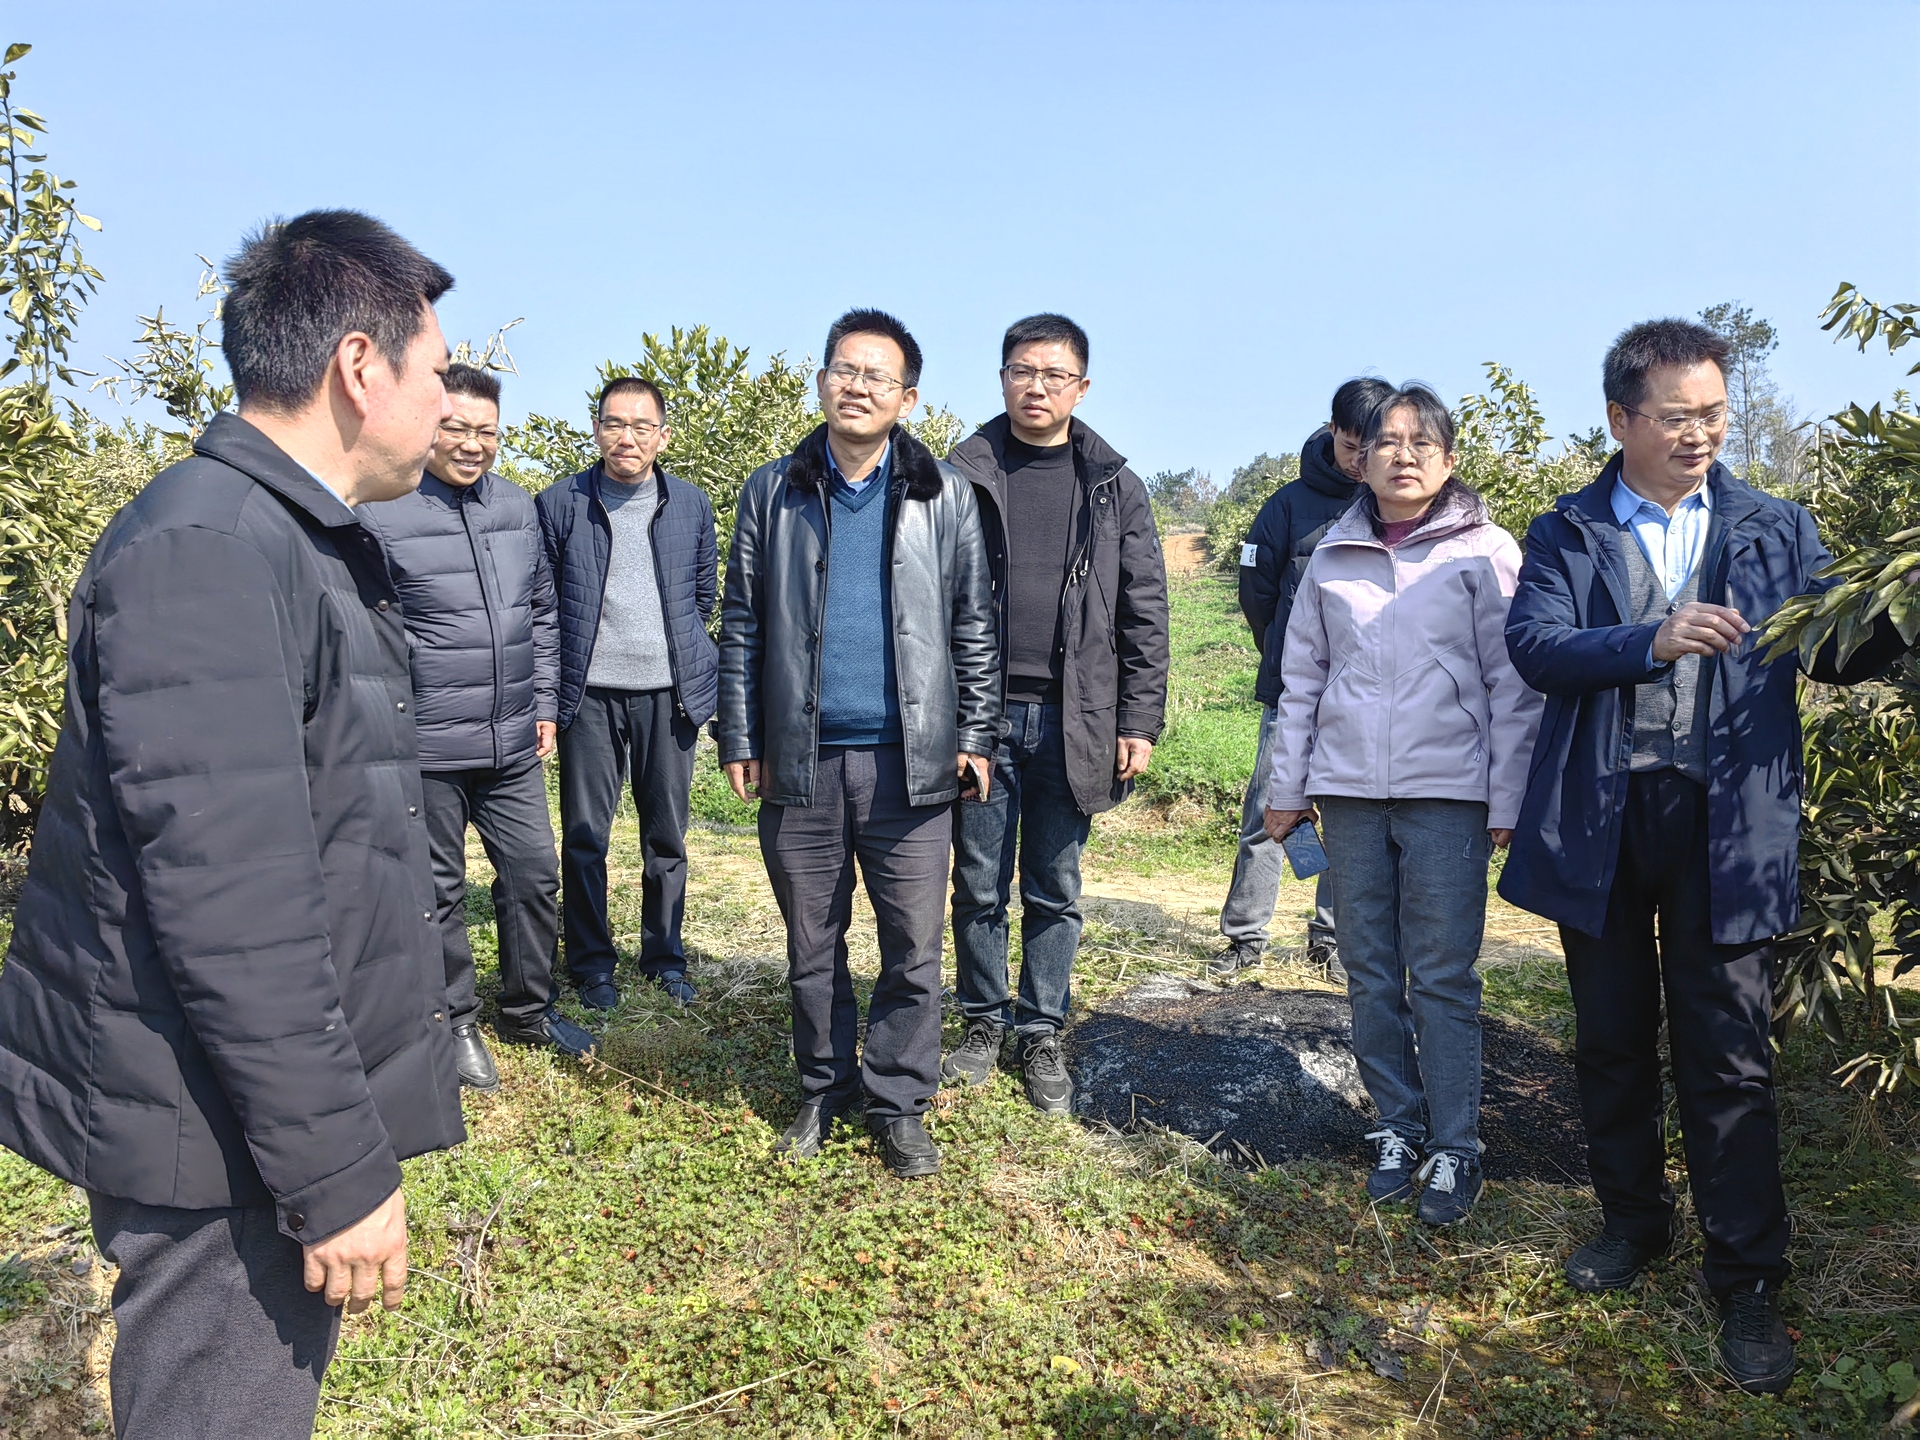 国家柑橘产业技术体系首席科学家程运江教授来夷指导柑橘产业发展